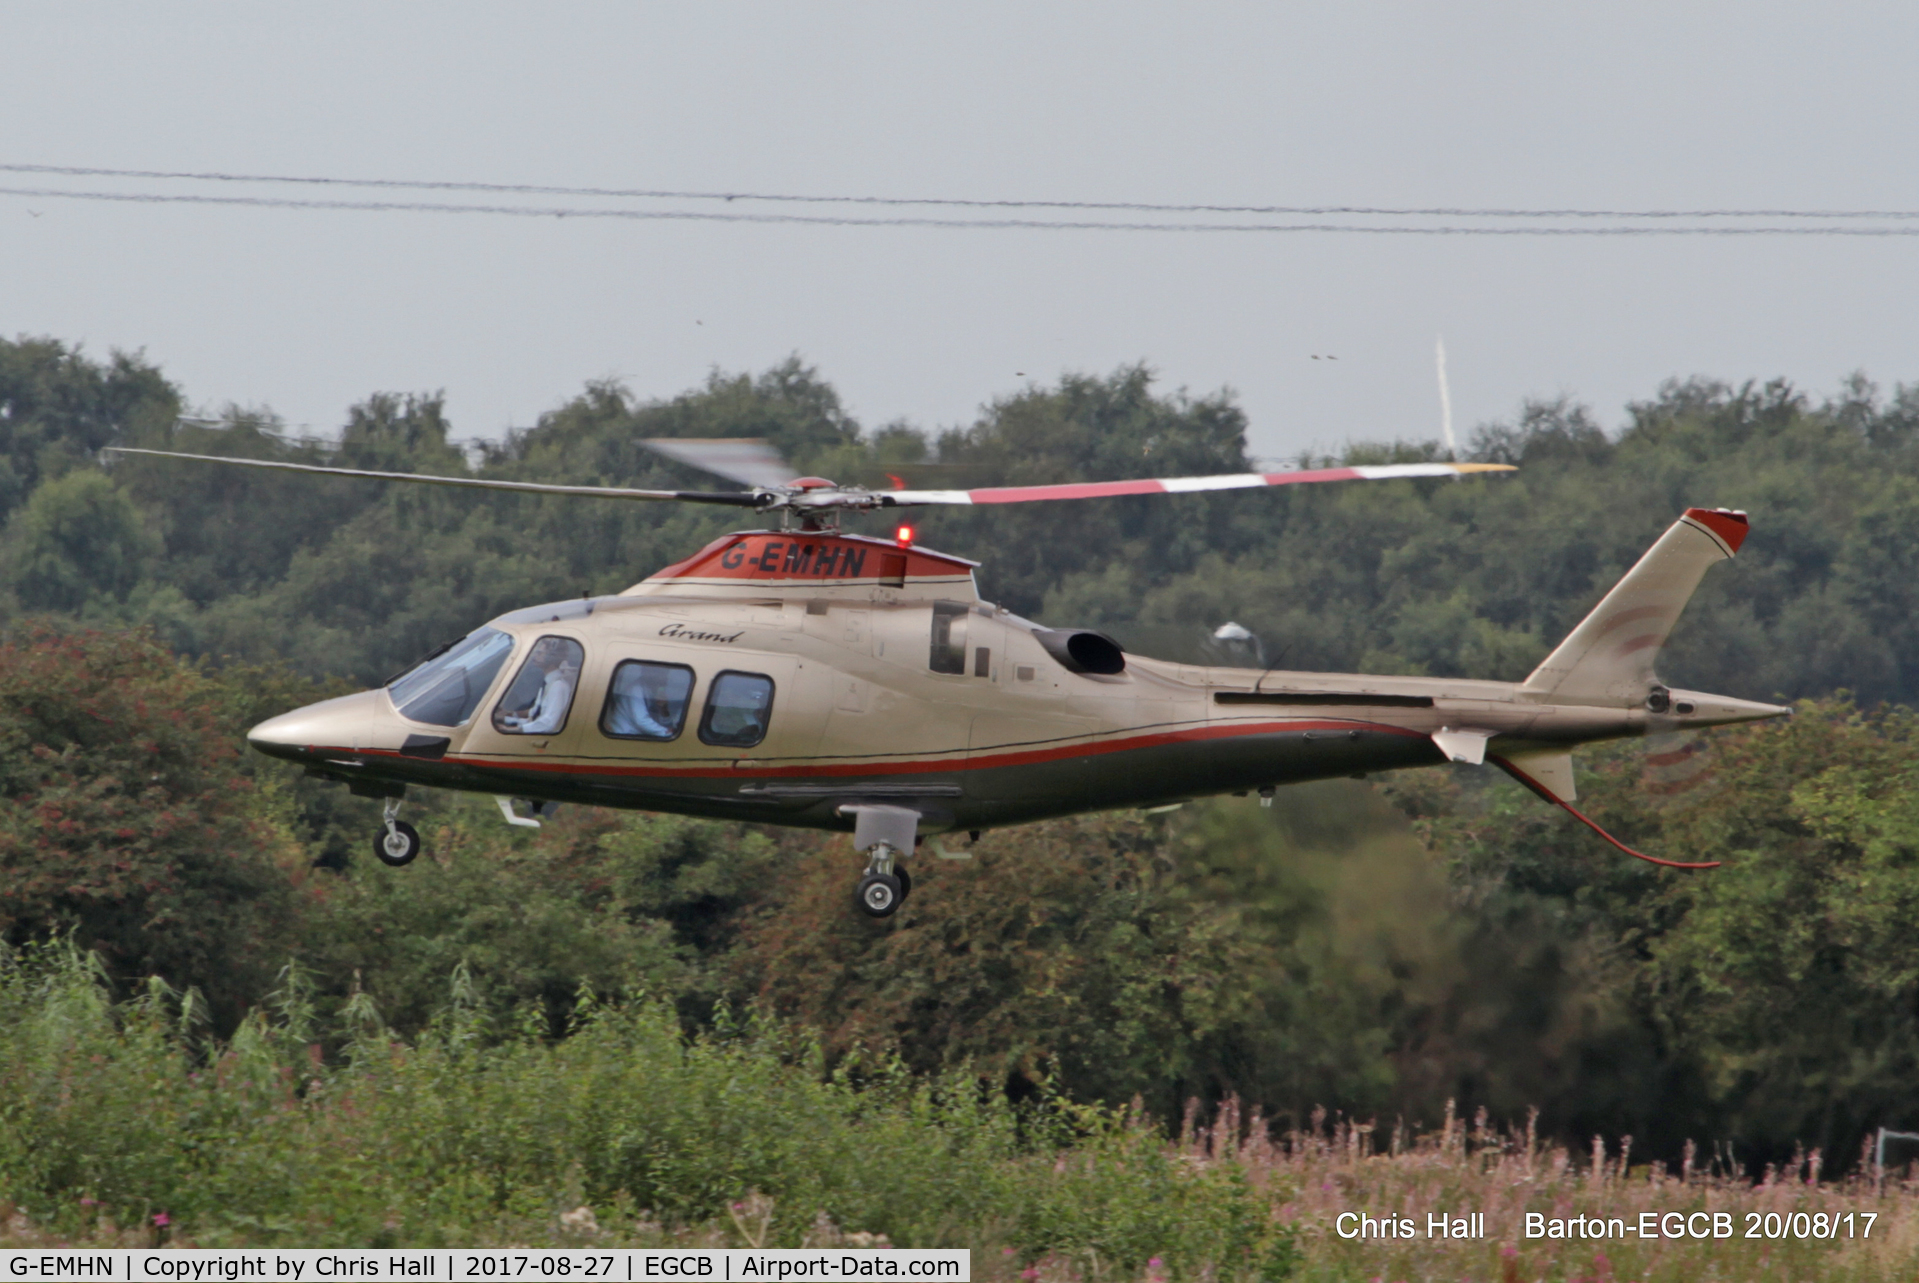 G-EMHN, 2010 Agusta A109S Grand C/N 22154, at Barton